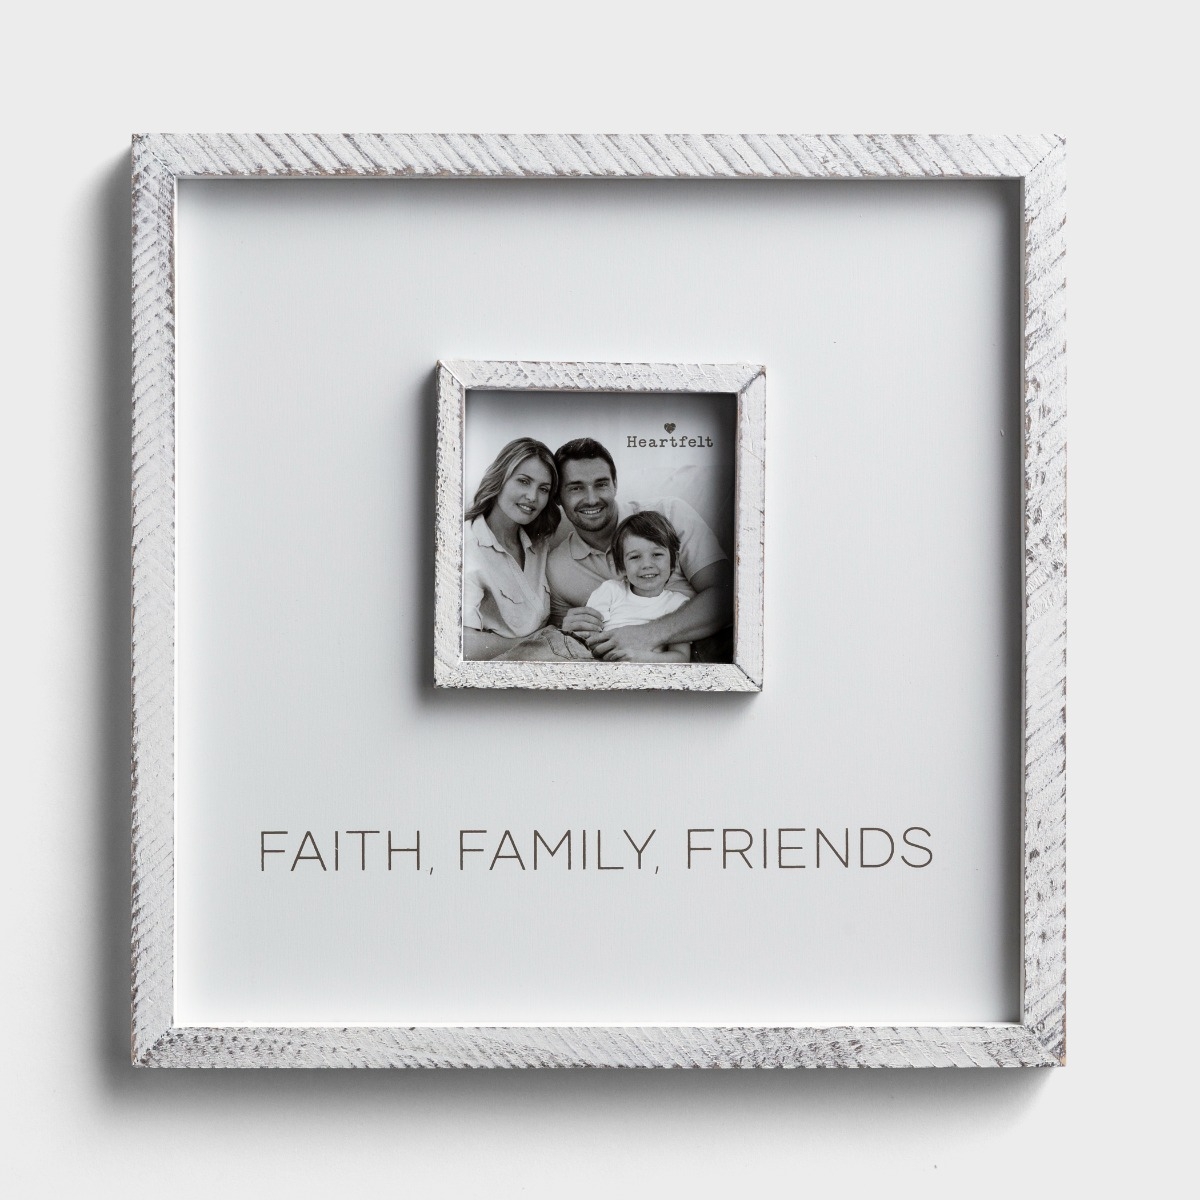 信仰，家庭，朋友-方形相框